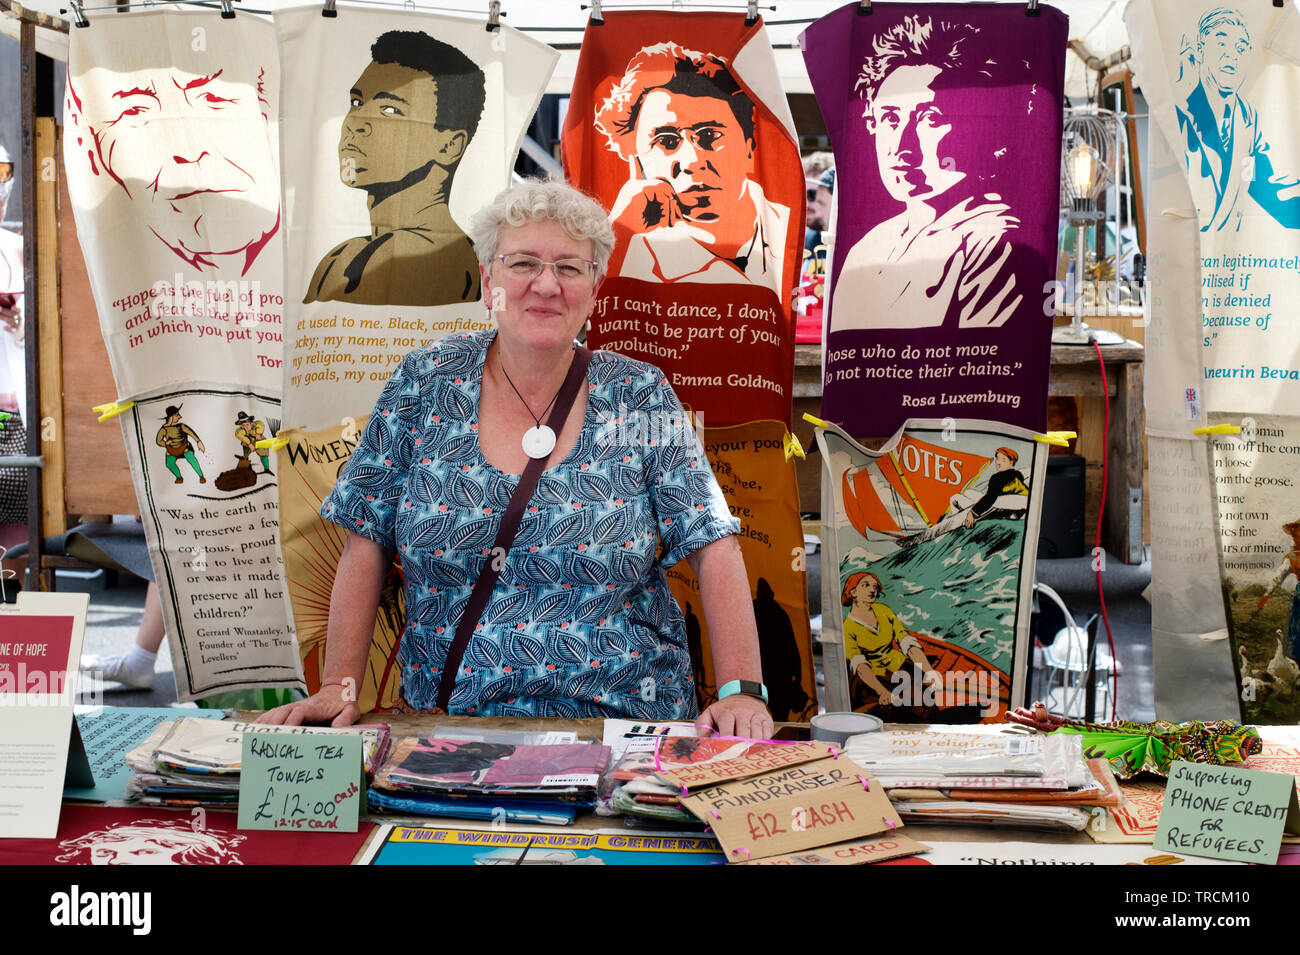 London, Hackney. Netil Markt. Verkauf teatowels mit Bildern der radikalen historischen Figuren, zugunsten der Handy Kredit für Flüchtlinge. Stockfoto